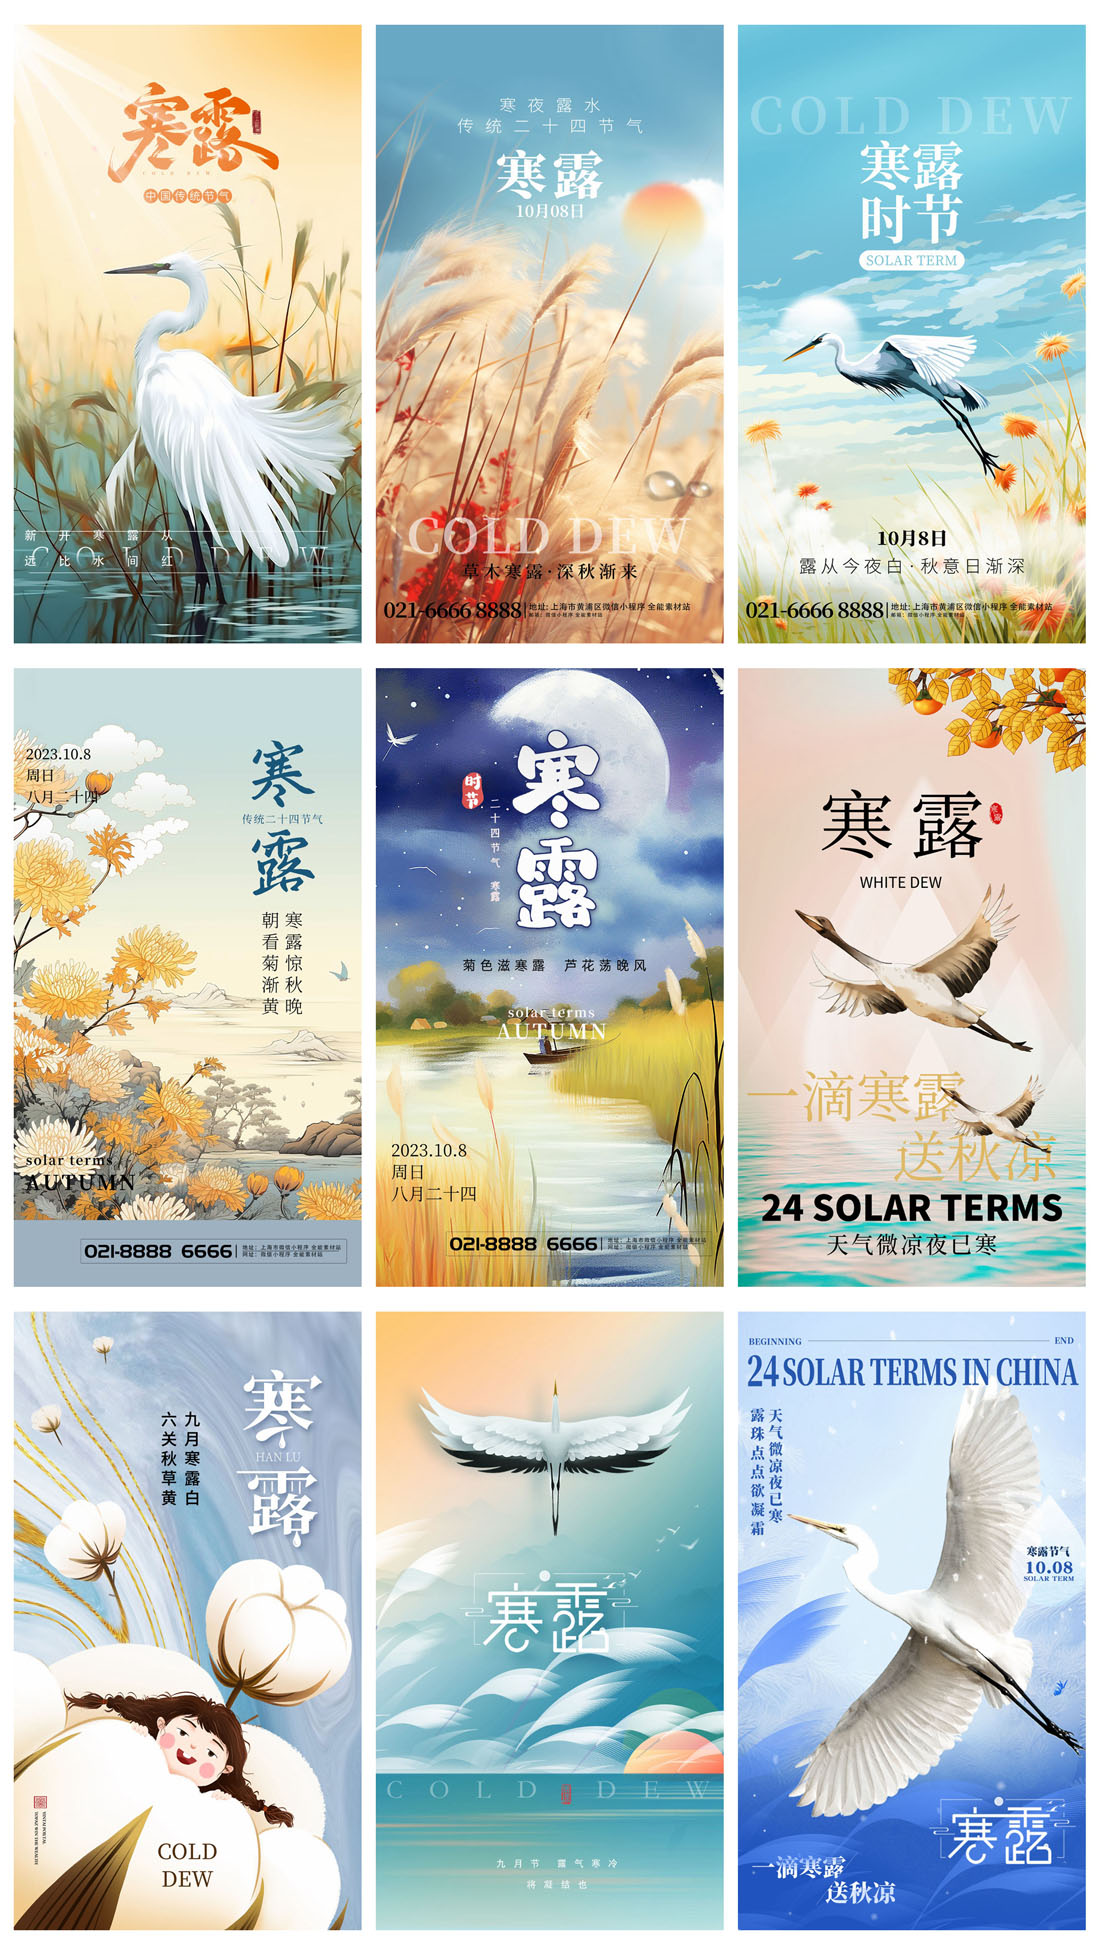 94款中国传统二十四节气之寒露节日海报PSD模板 设计素材 第17张